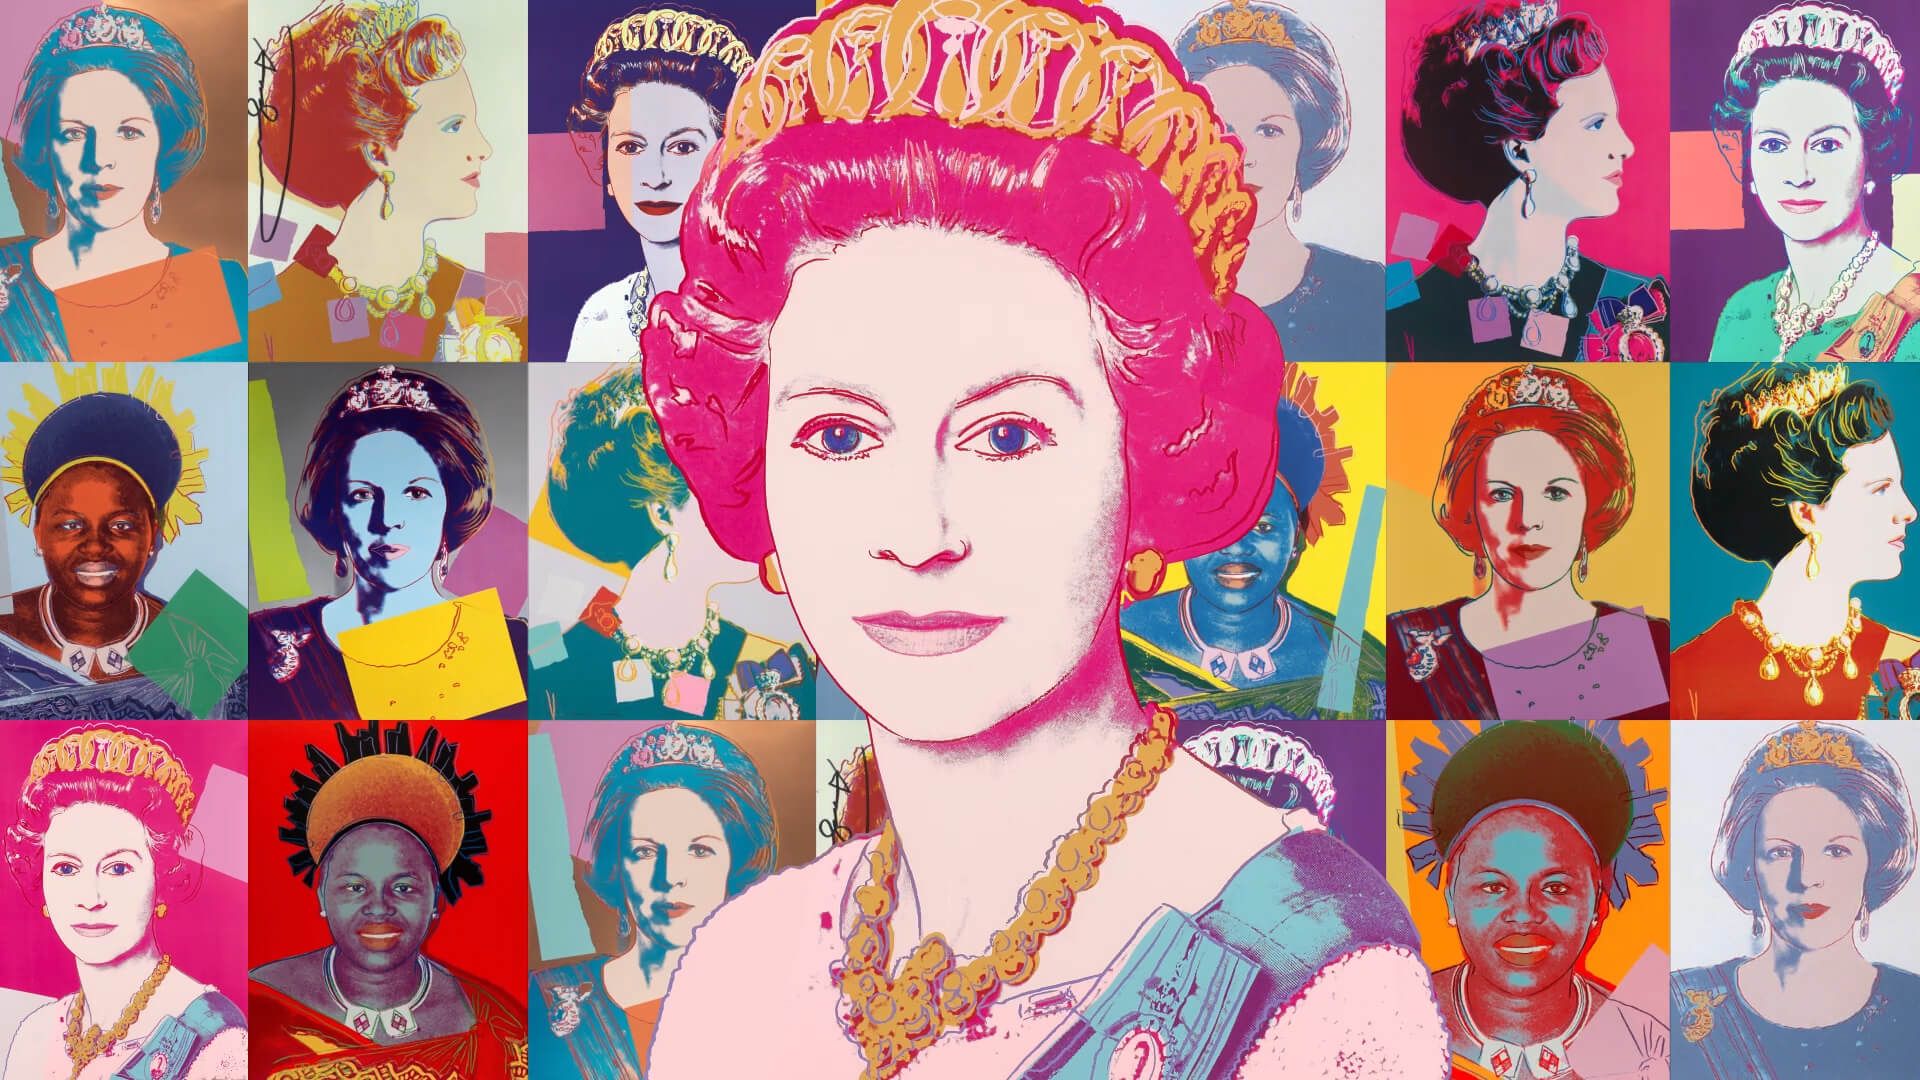 Artcurial — Queen Elizabeth II, Andy Warhol - Motion Design